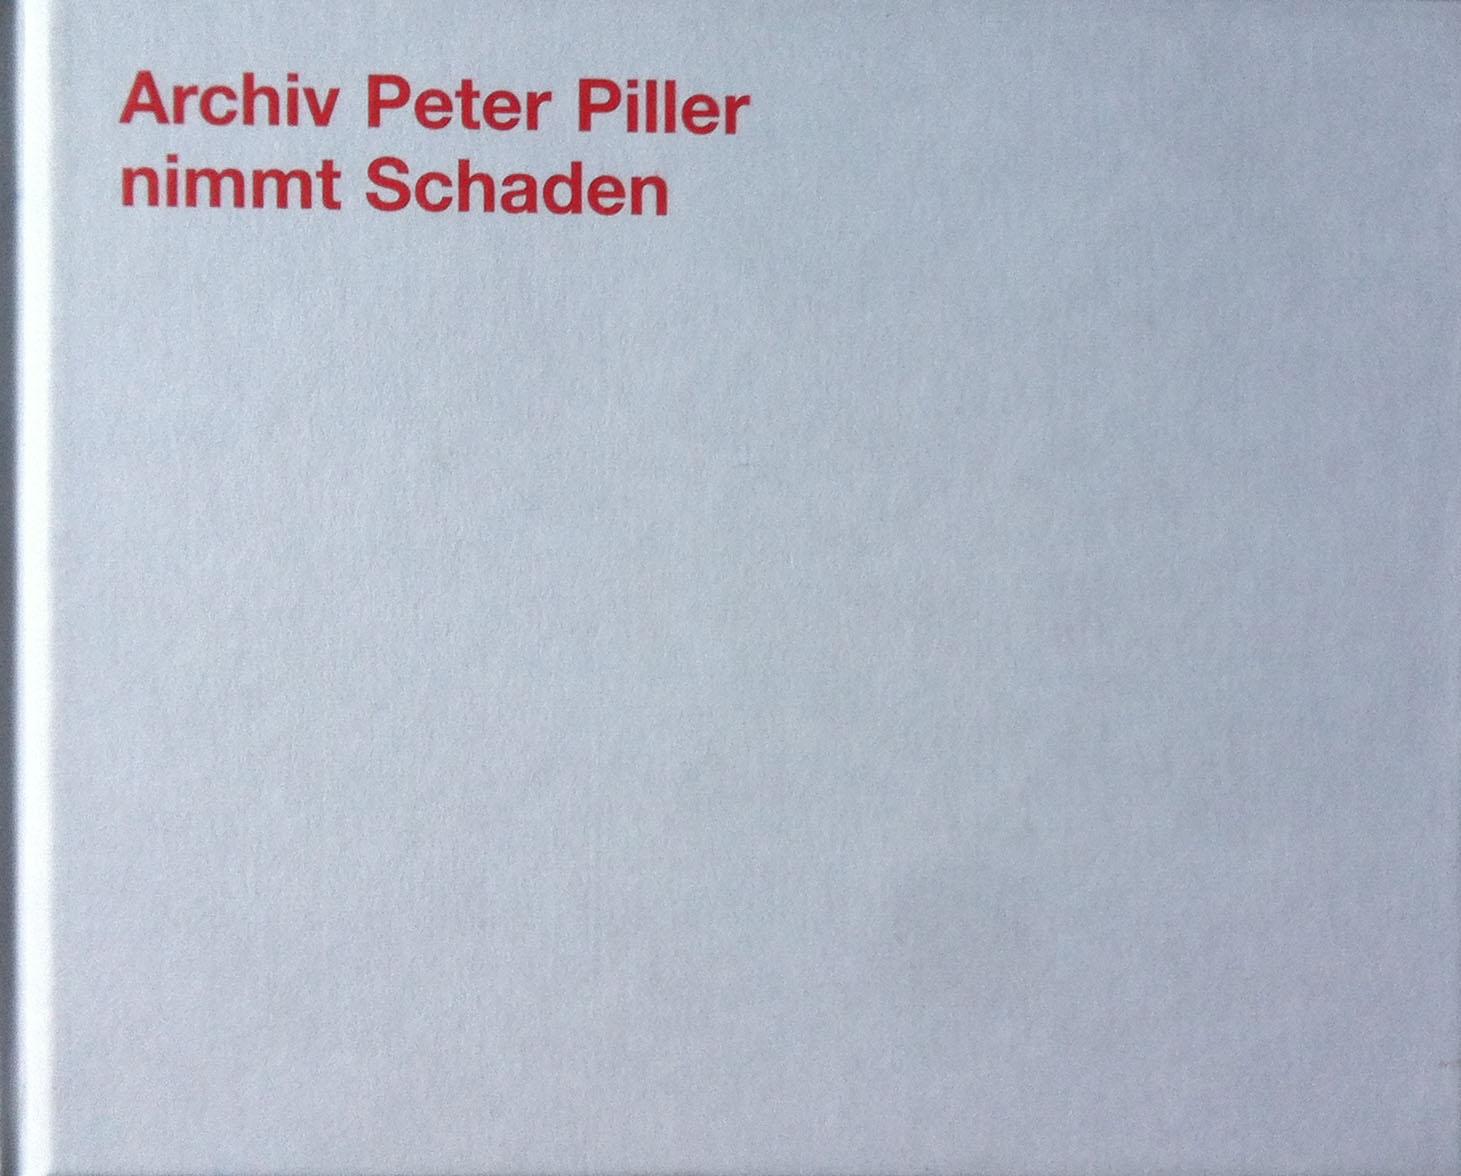 Piller, Peter. Archiv Peter Piller nimmt Schaden. Schweizer Landschaften.